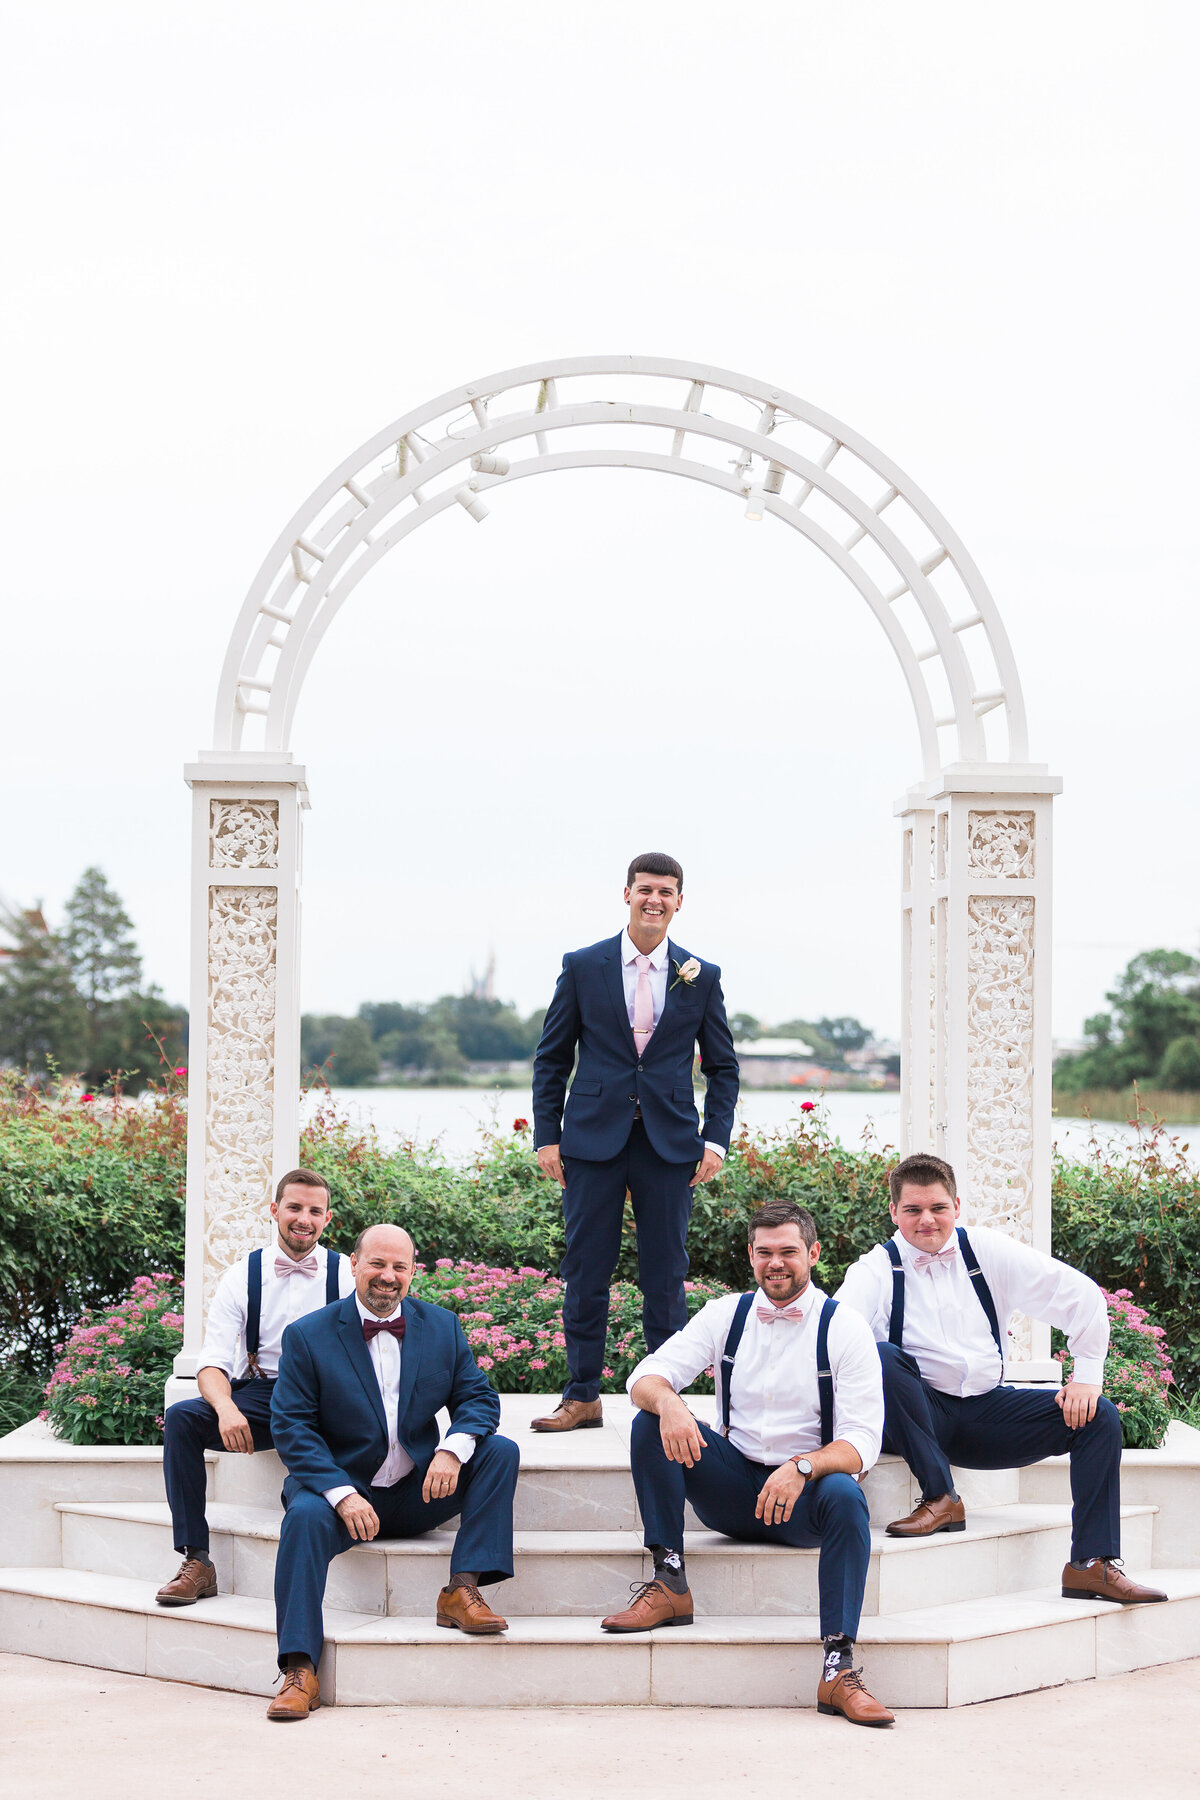 Groom and groomsmen at Disney wedding